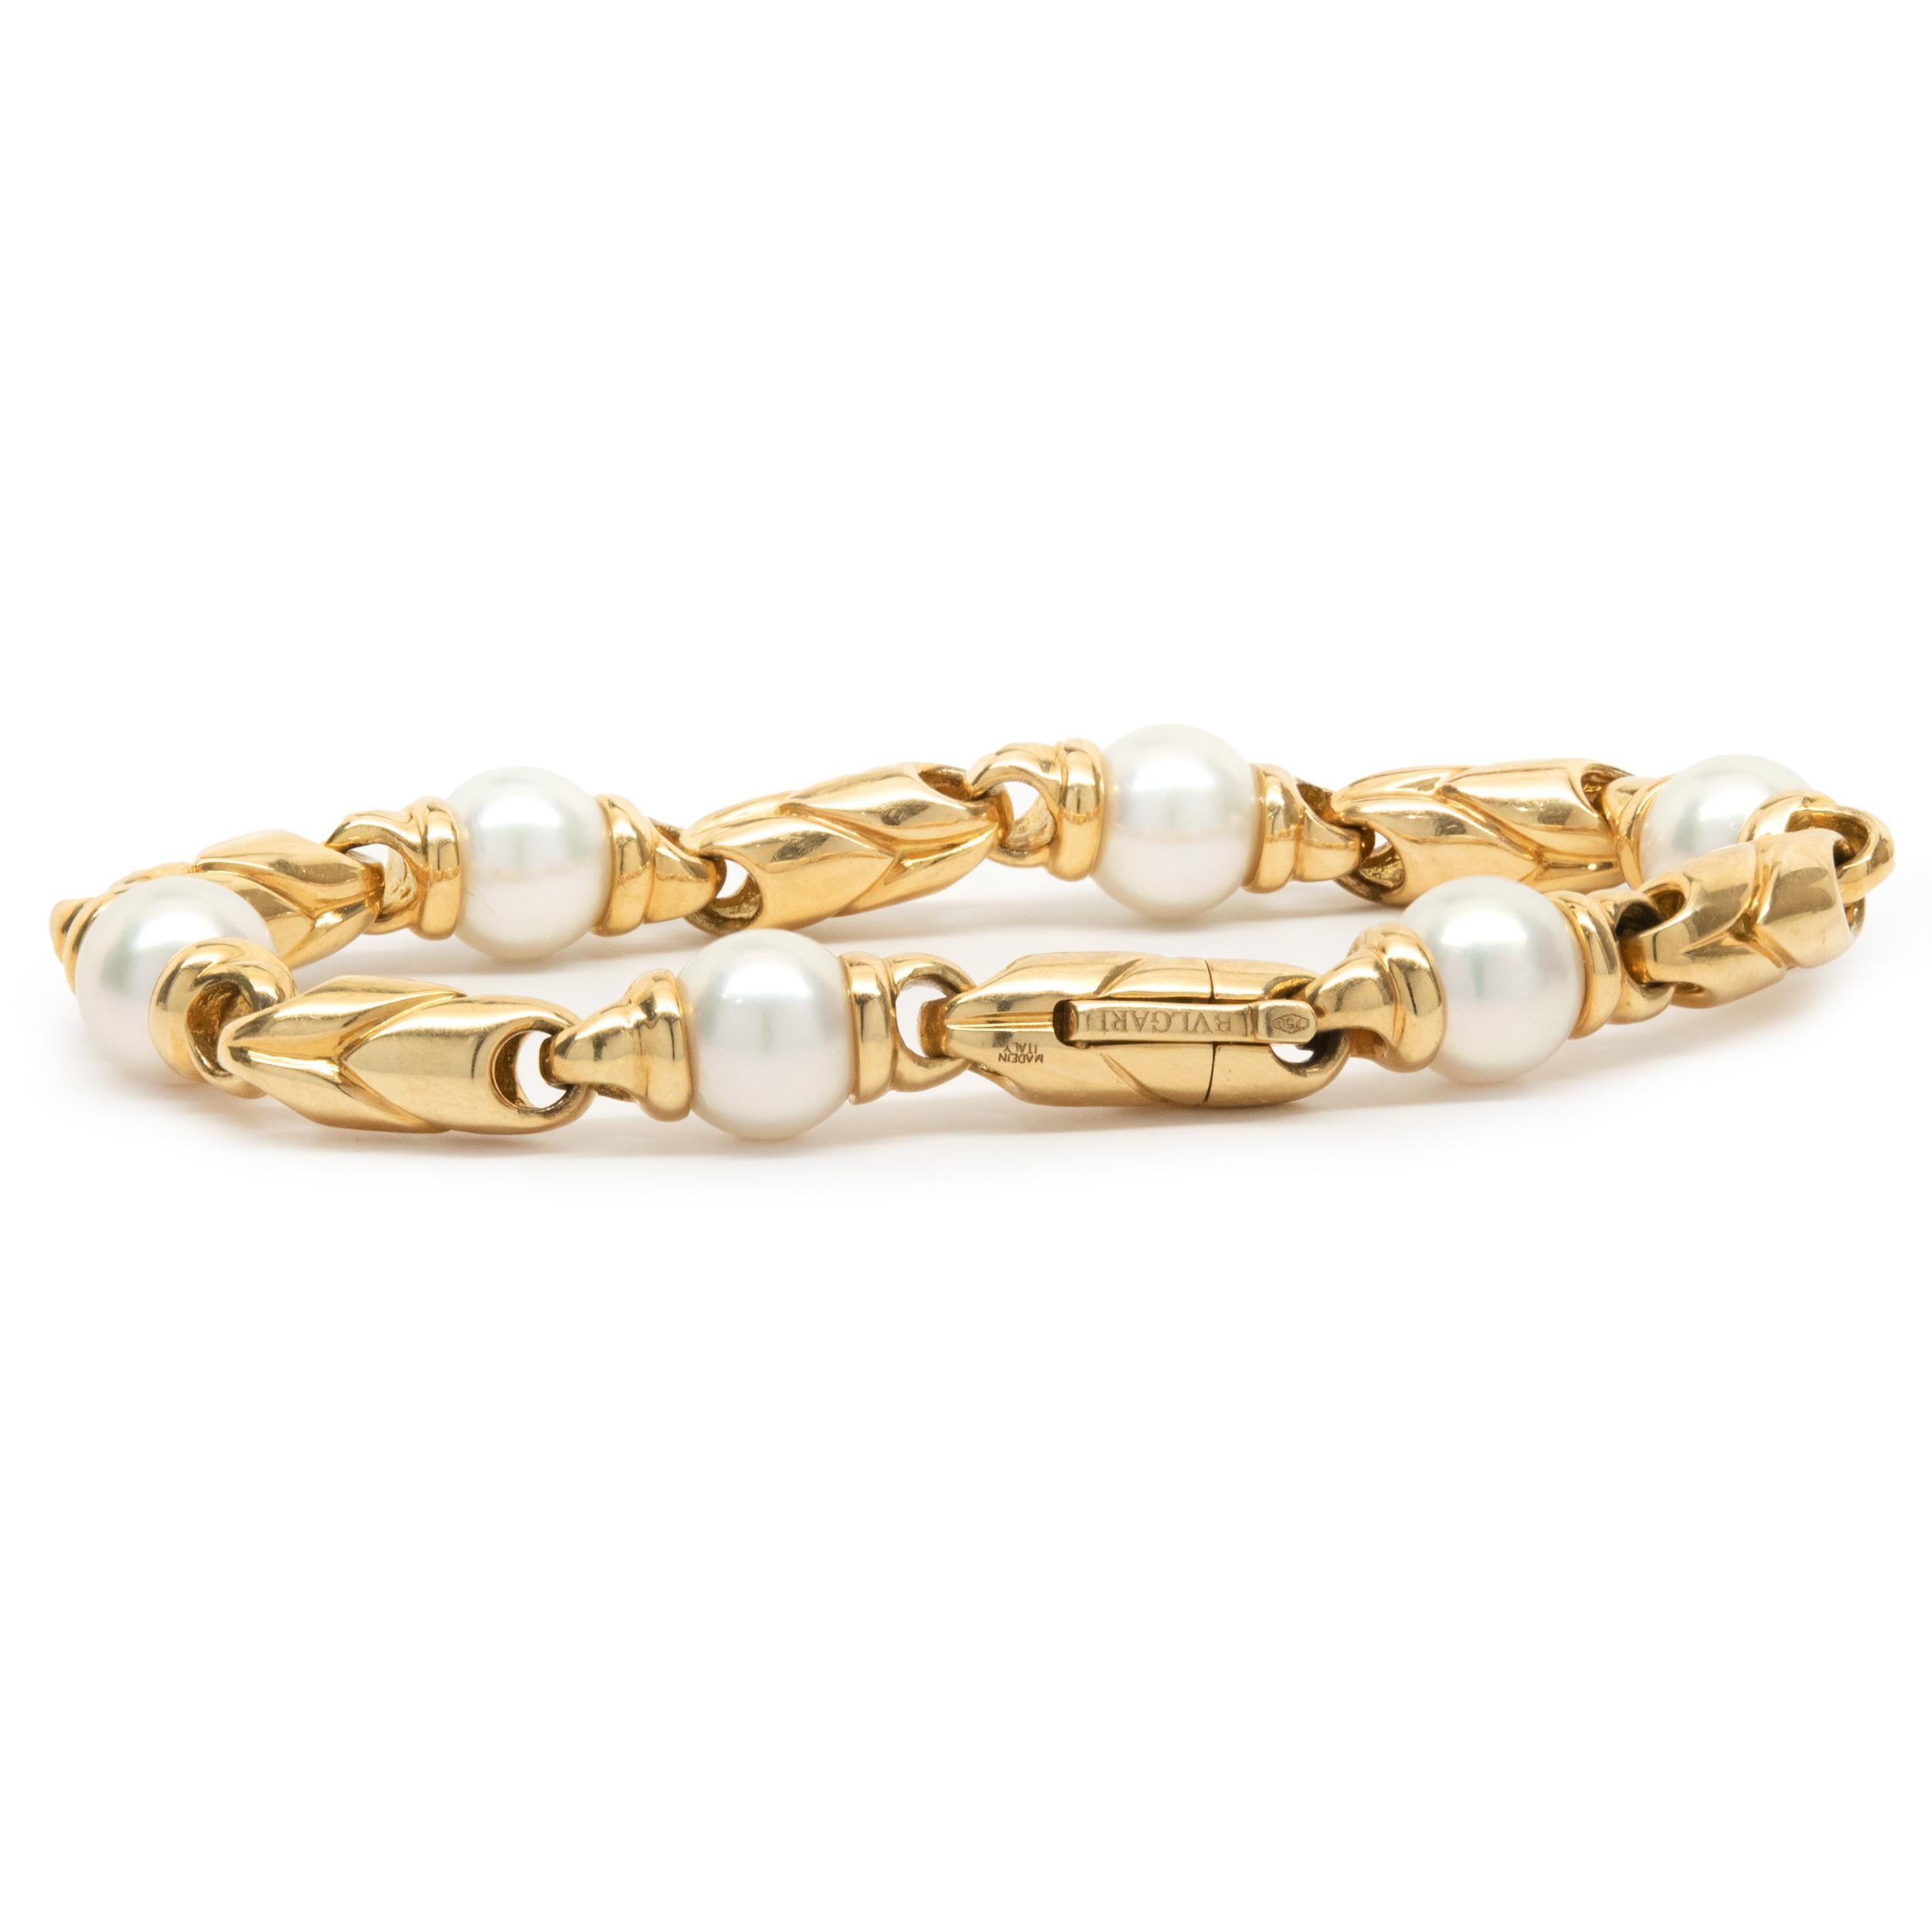 Designer: Bulgari
Material: 18K yellow gold
Dimensions: bracelet measures 7-inches in length
Weight: 31.69 grams
